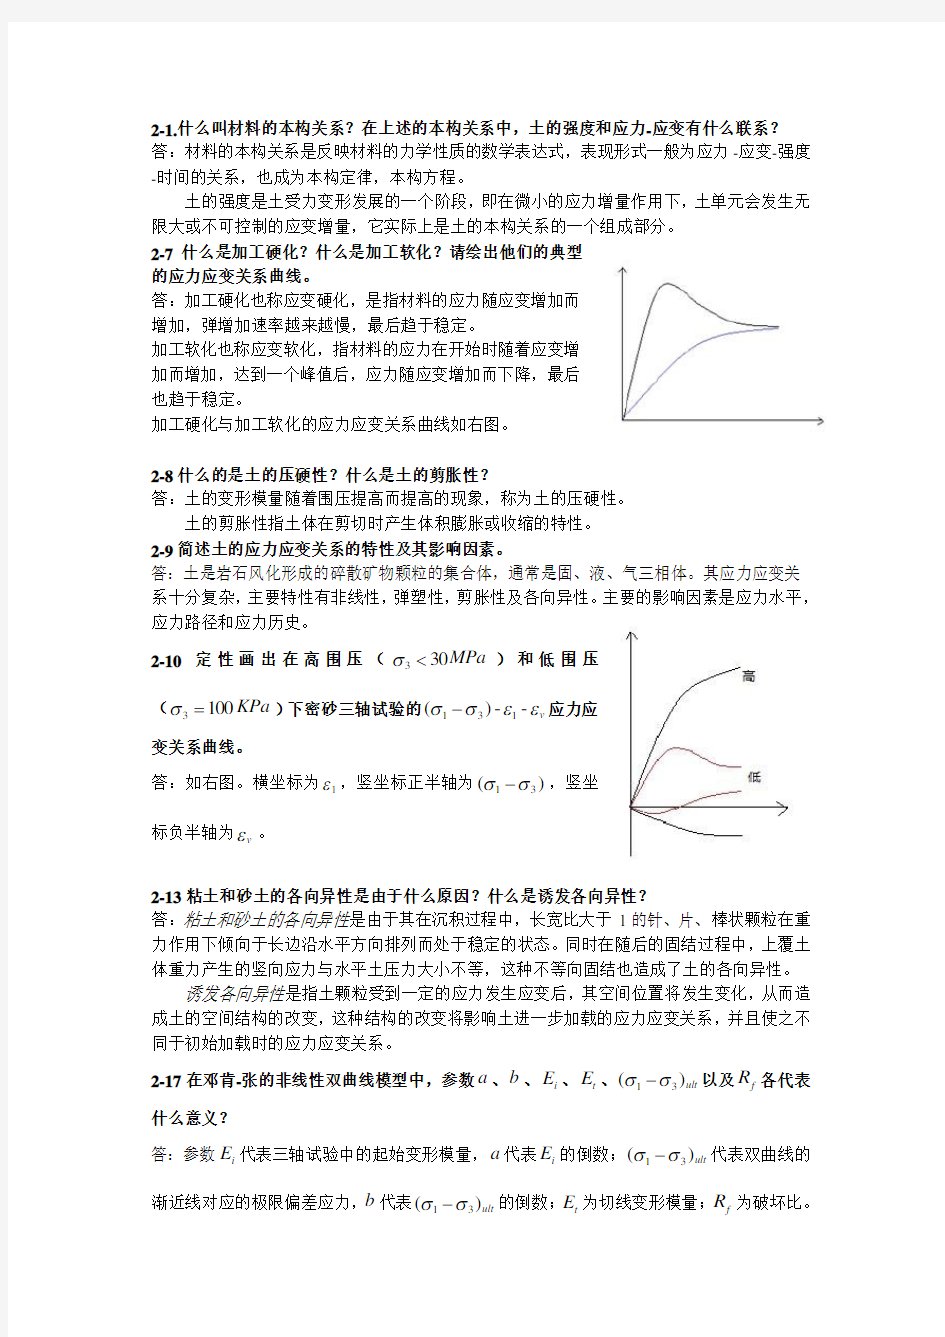 高等土力学(李广信)2-5章部分习题答案